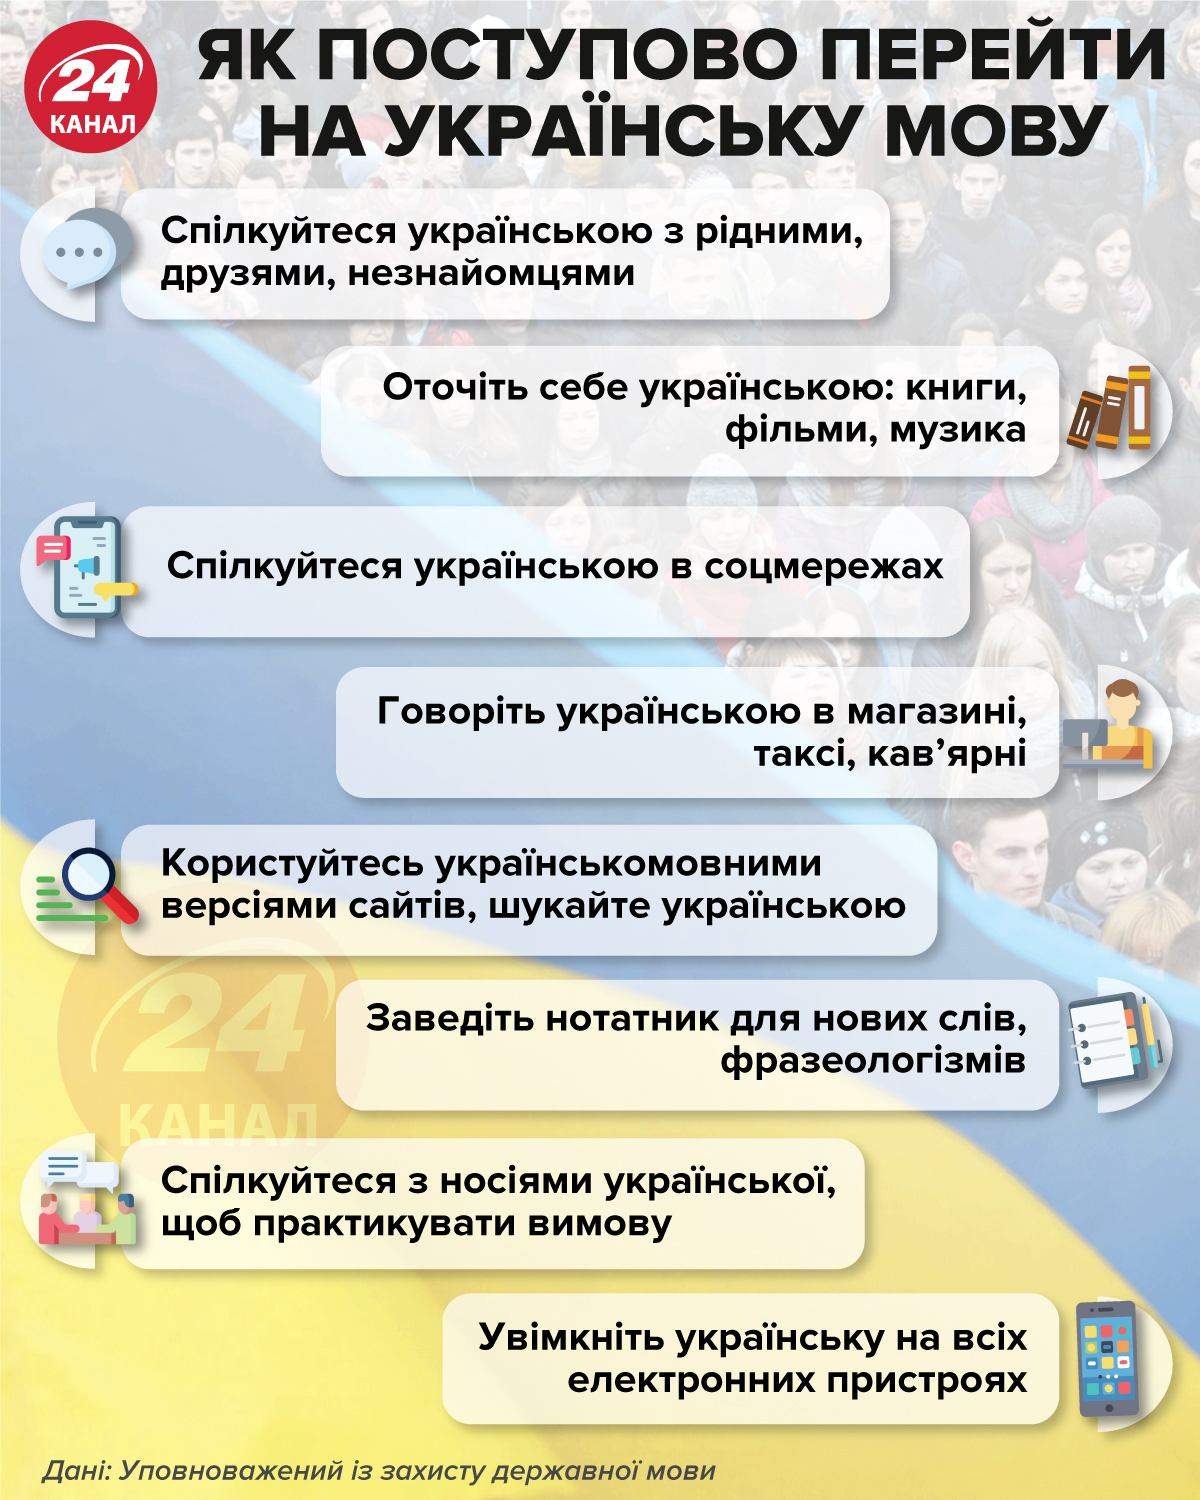 Как постепенно перейти на украинский язык / Инфографика 24 канала